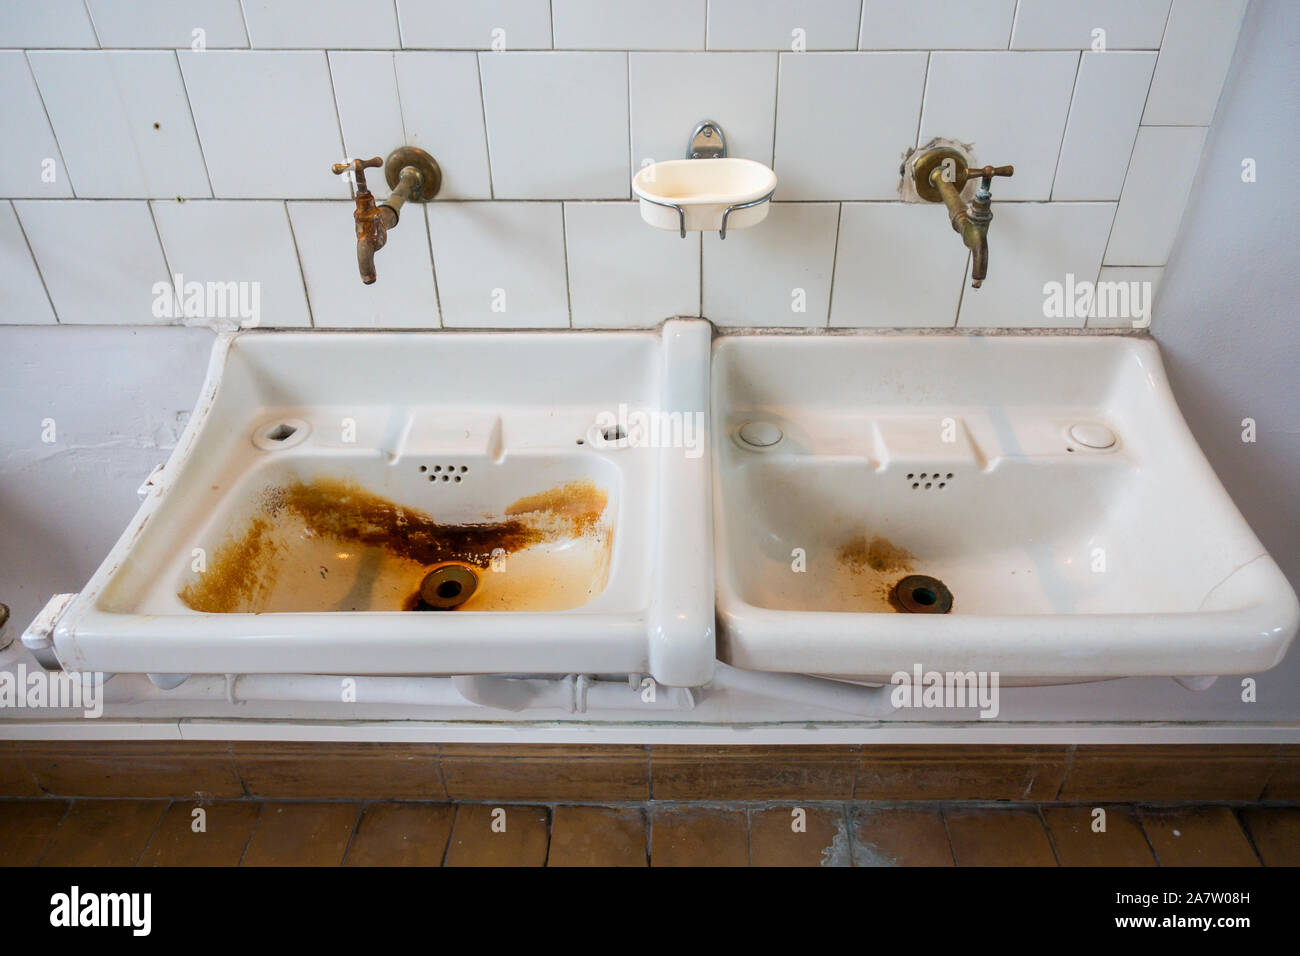 Zwei dreckige Waschbecken/Waschbecken in rostige Flecken im Bad stillgelegter Klinik abgedeckt Stockfoto